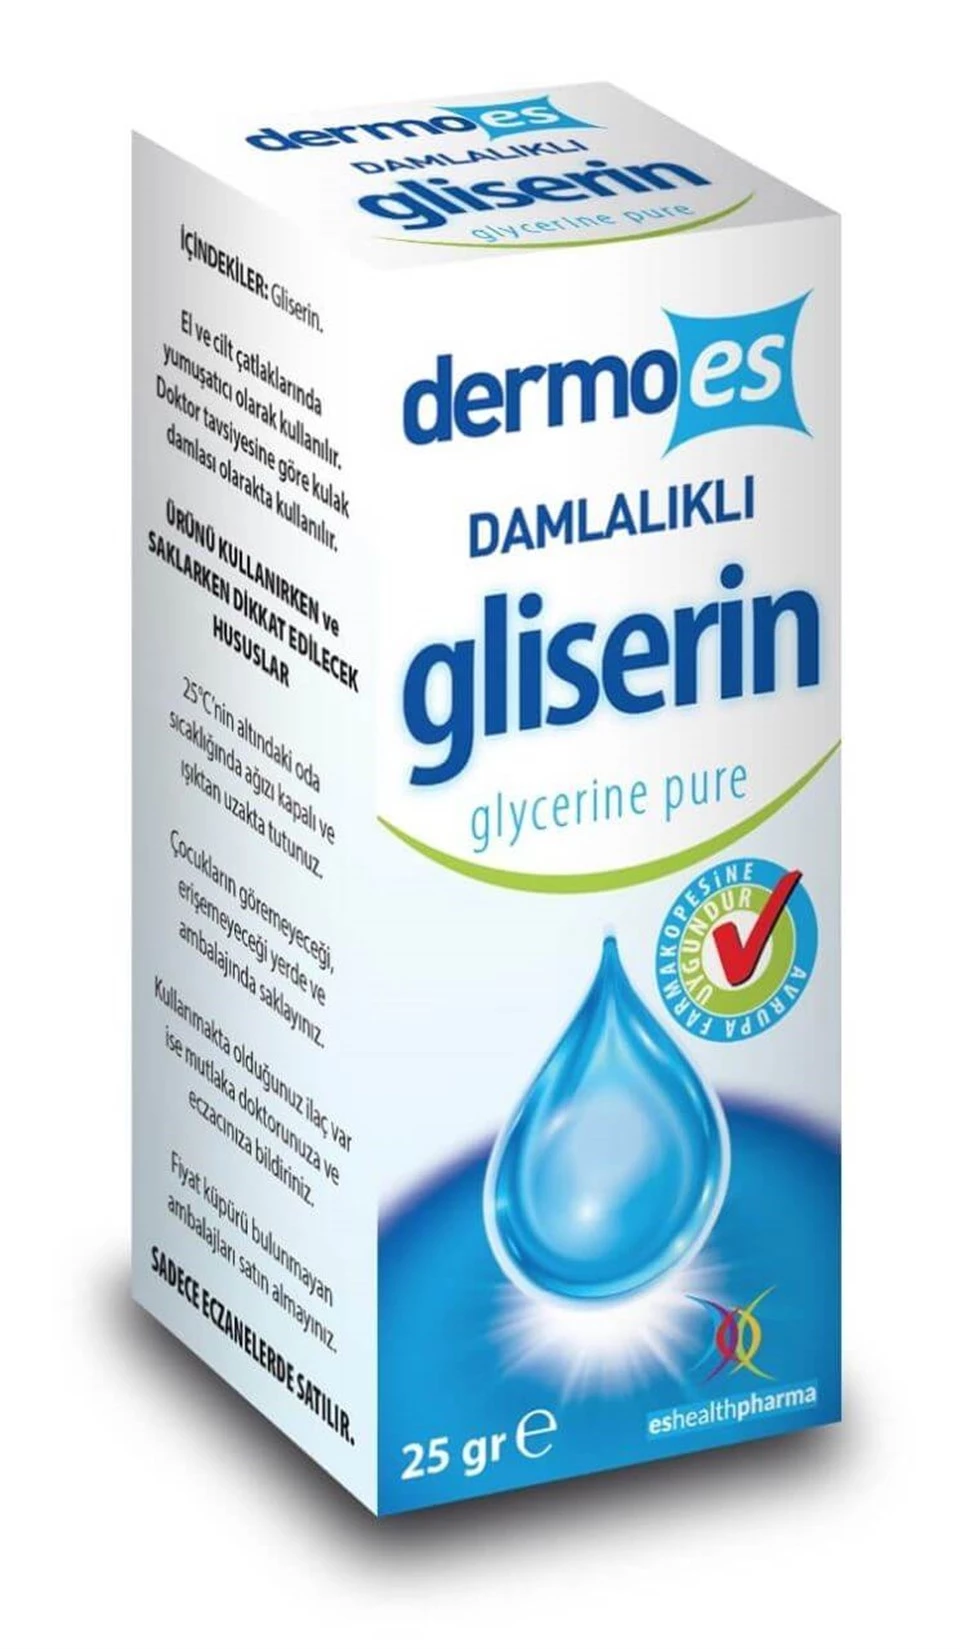 Dermoes Gliserin - Glycerine Pure 25gr Damlalıklı